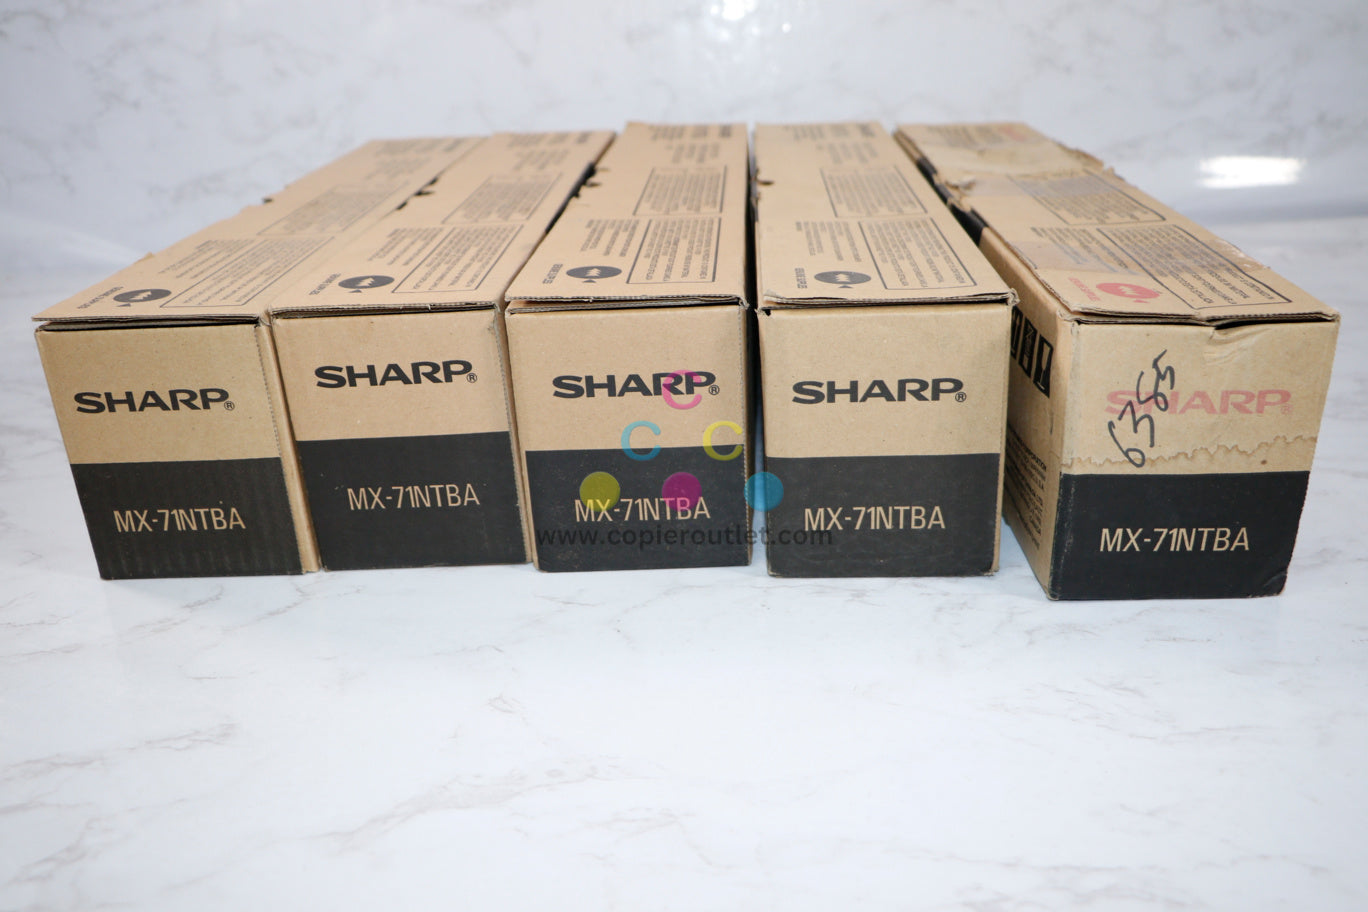 5 New Genuine Sharp MX-5500N, MX-6201N, MX-7001N MX-71NTBA Black Toners